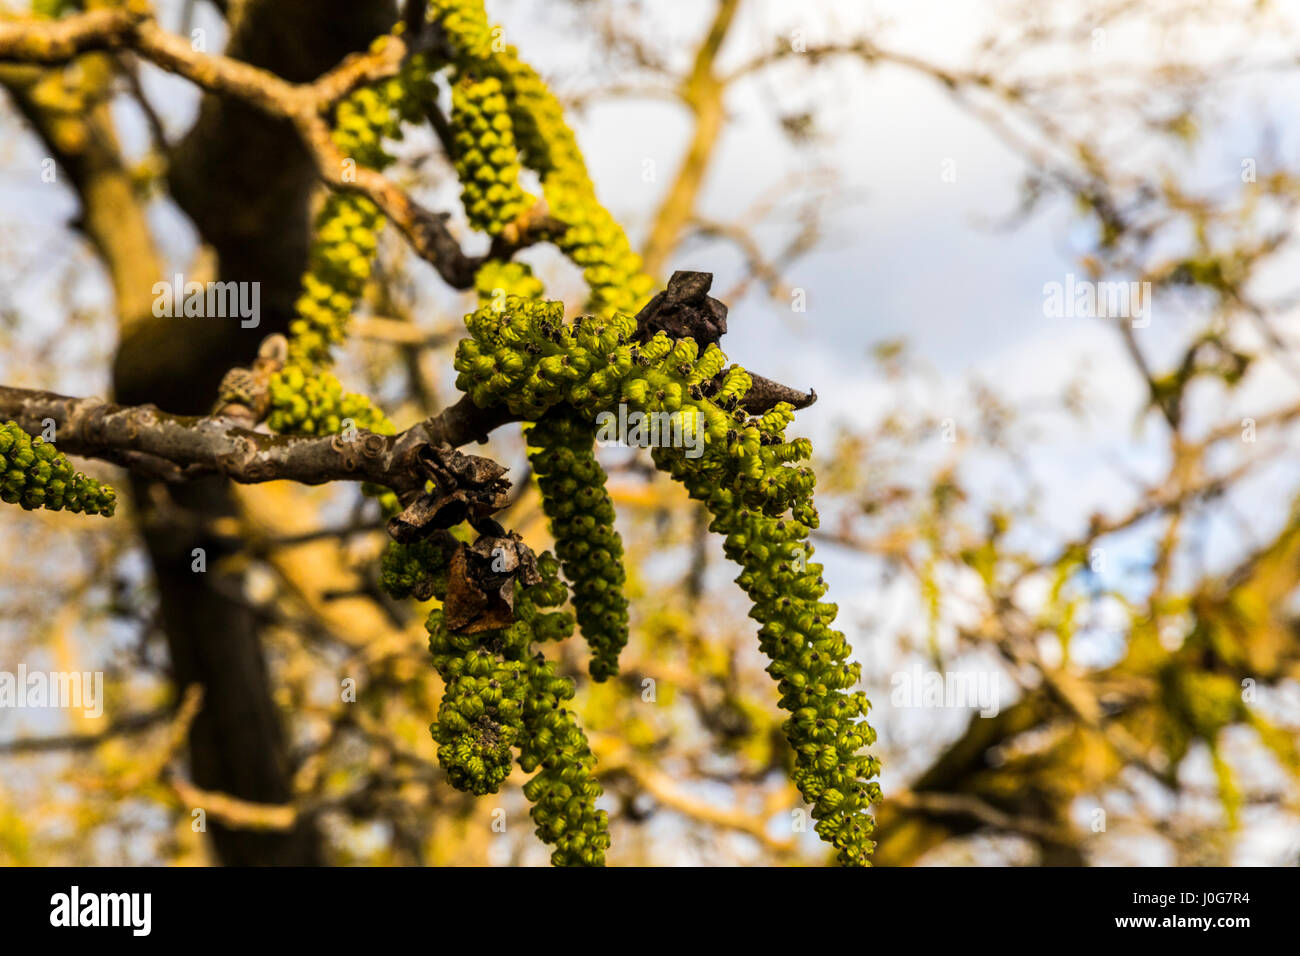 A walnut tree blossom in a California San Joaquin Valley walnut orchard Stock Photo